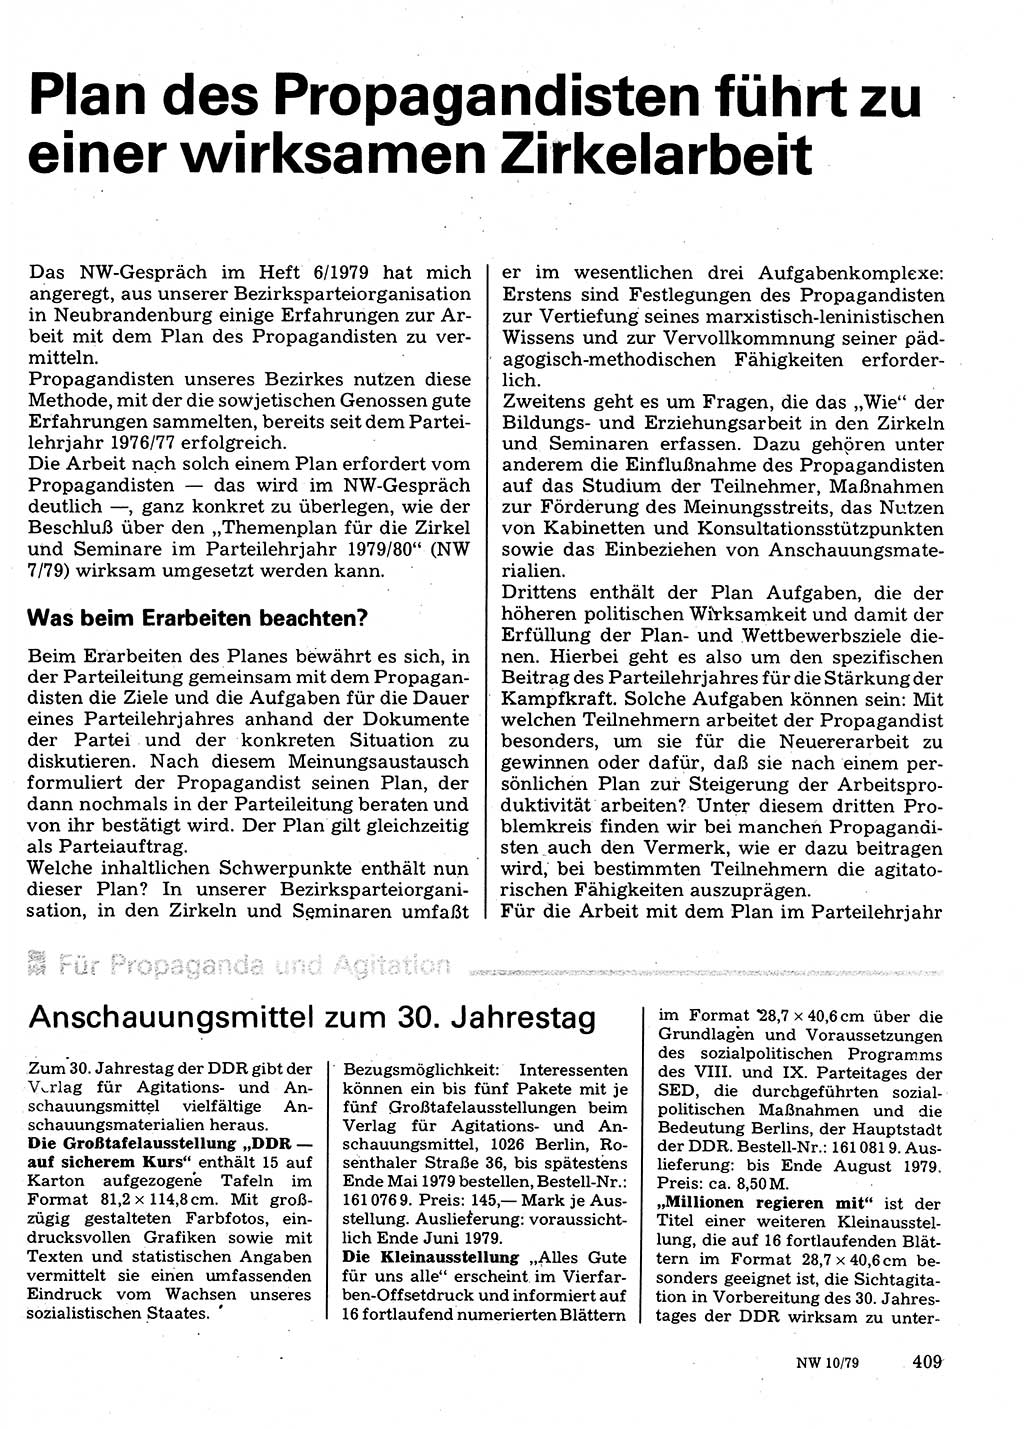 Neuer Weg (NW), Organ des Zentralkomitees (ZK) der SED (Sozialistische Einheitspartei Deutschlands) für Fragen des Parteilebens, 34. Jahrgang [Deutsche Demokratische Republik (DDR)] 1979, Seite 409 (NW ZK SED DDR 1979, S. 409)